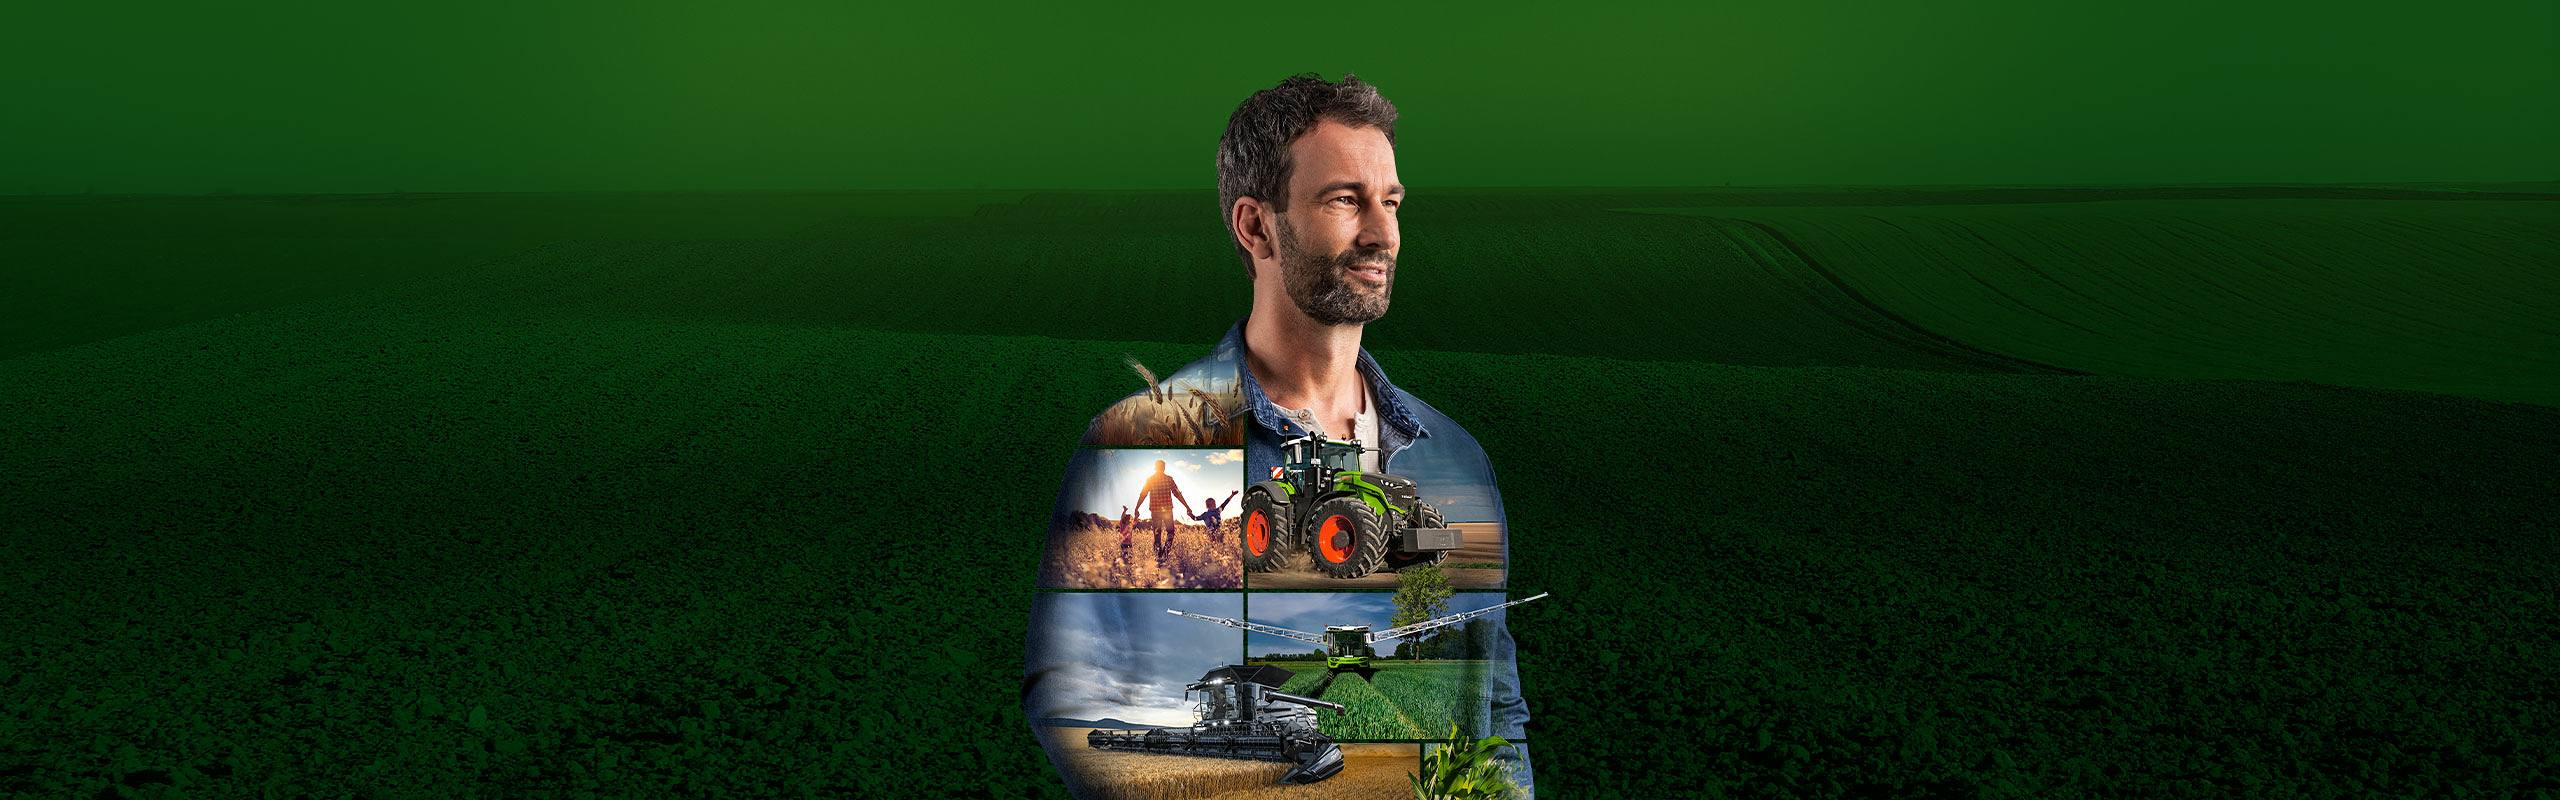 En landmand står foran en grøn baggrund og ser motiveret ud på fremtiden. På hans overdel vises Fendt produkter.